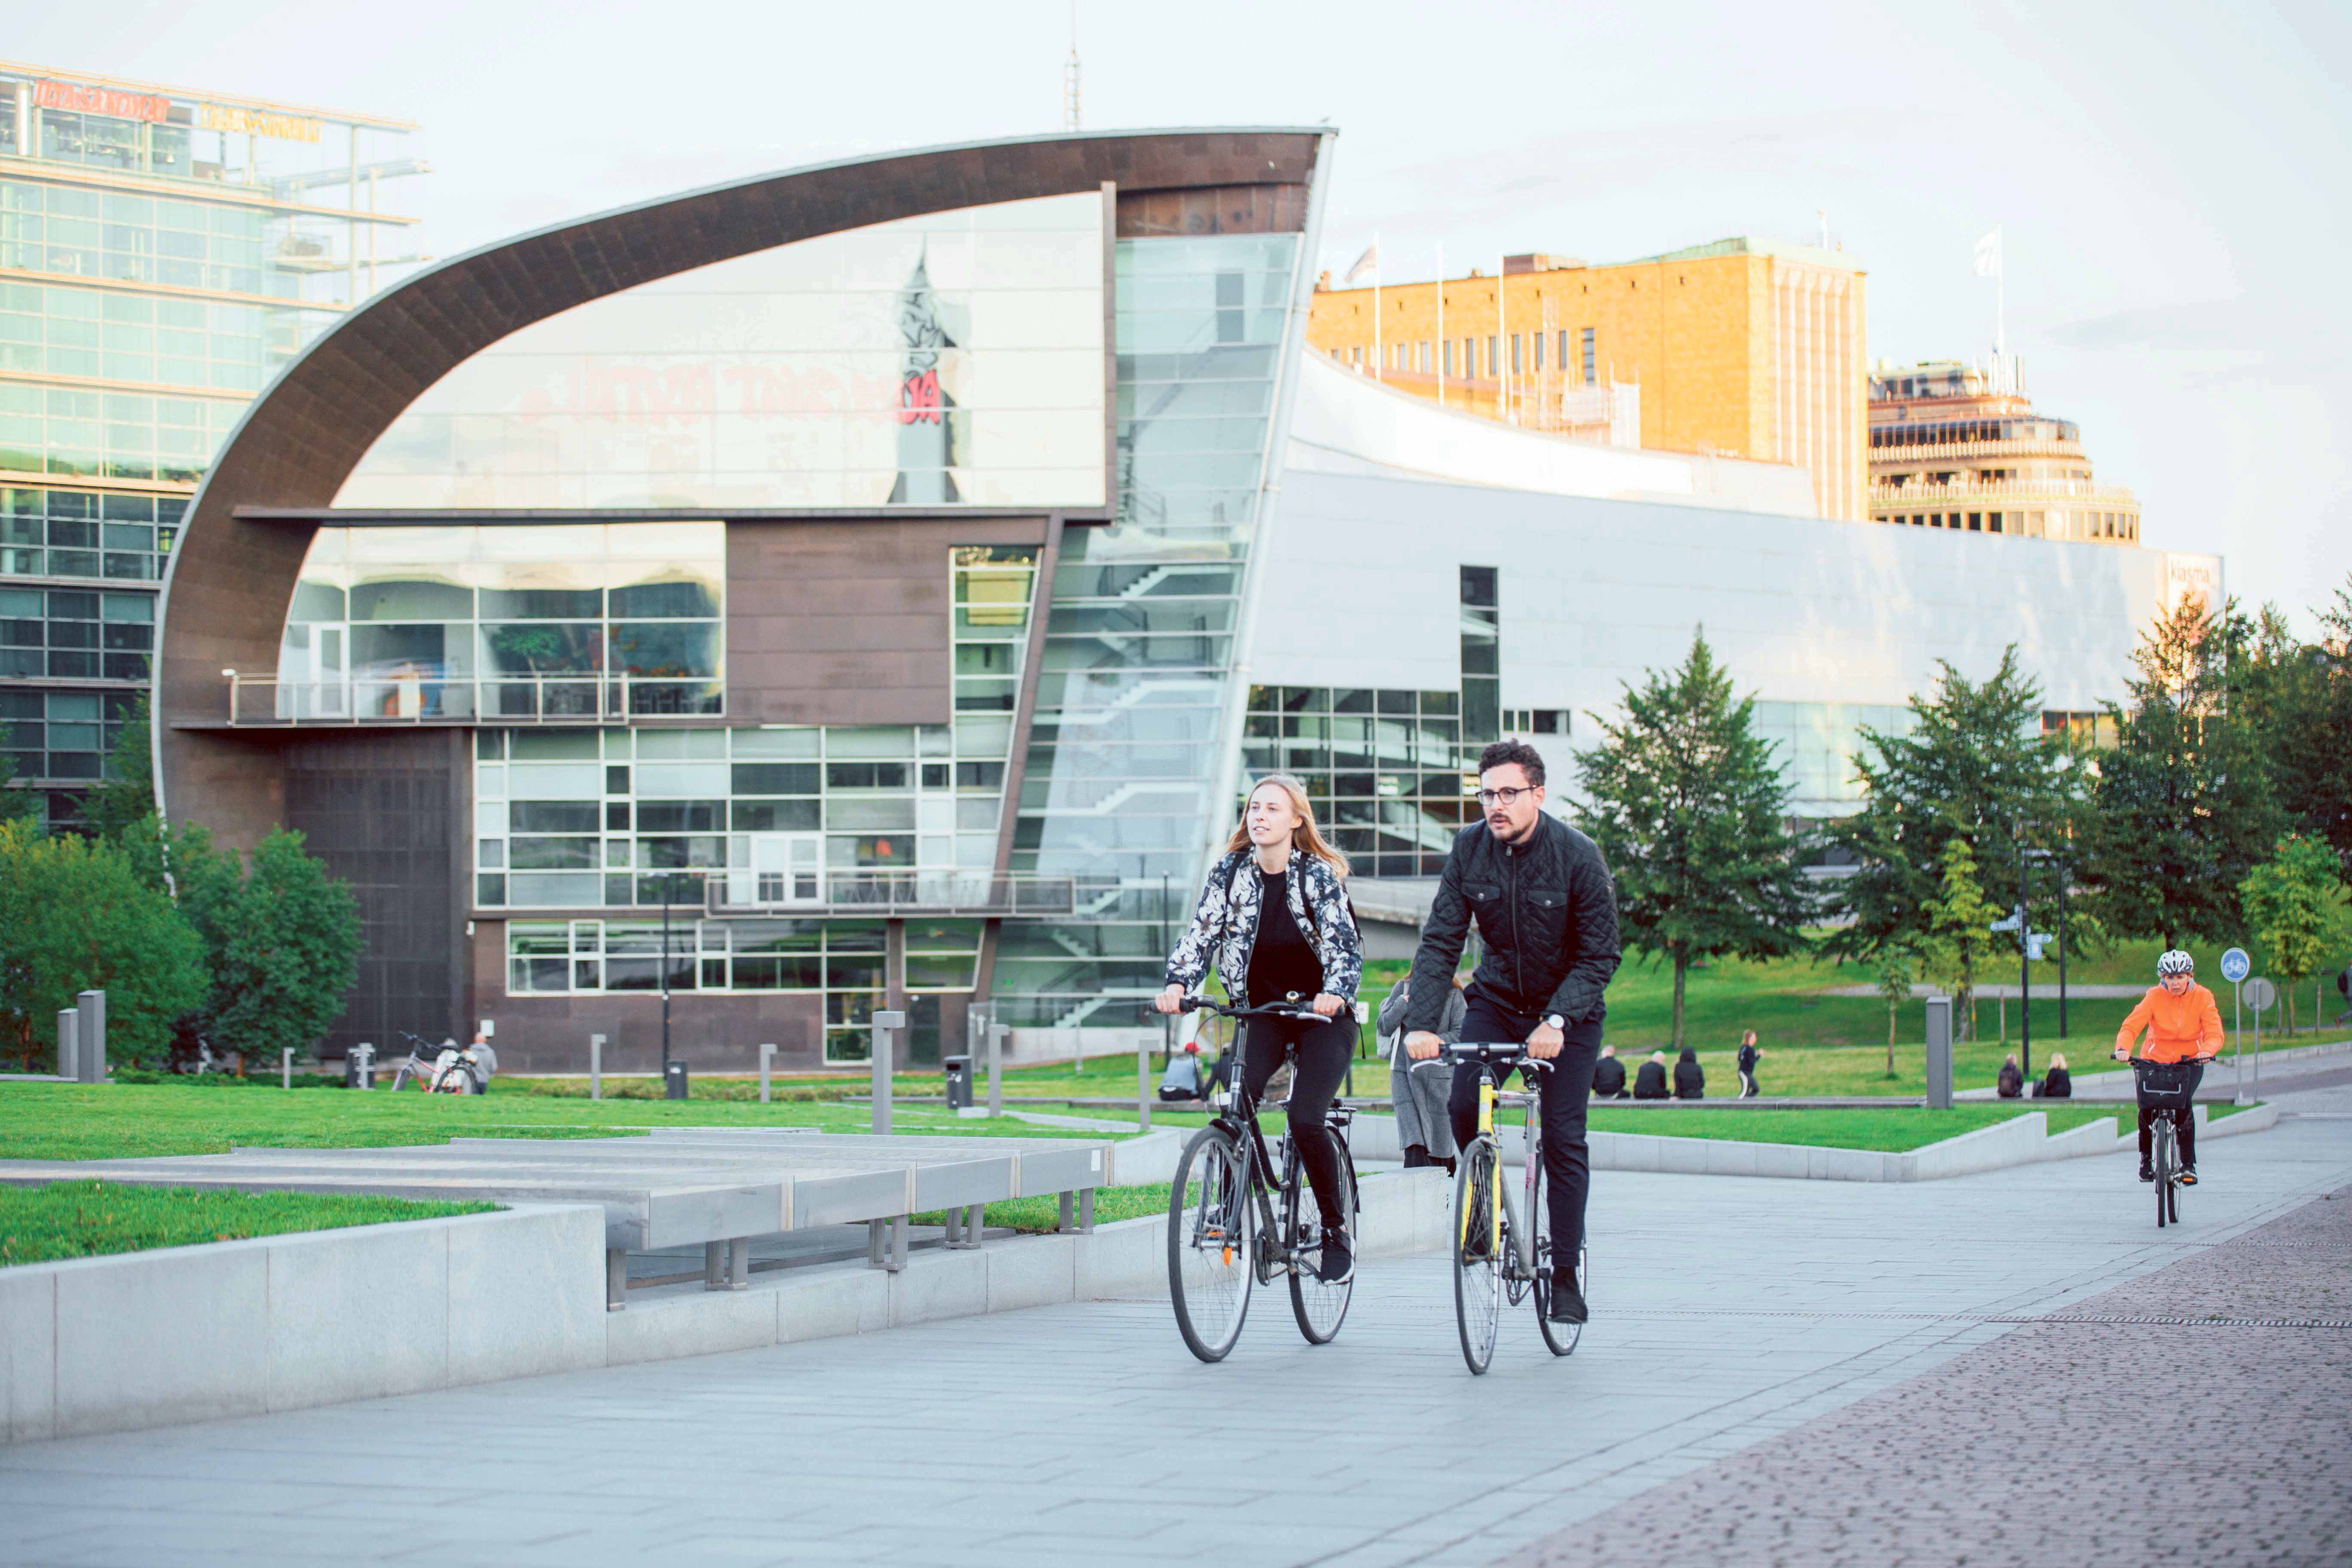 Deux personnes en vélo dans un environnement urbain